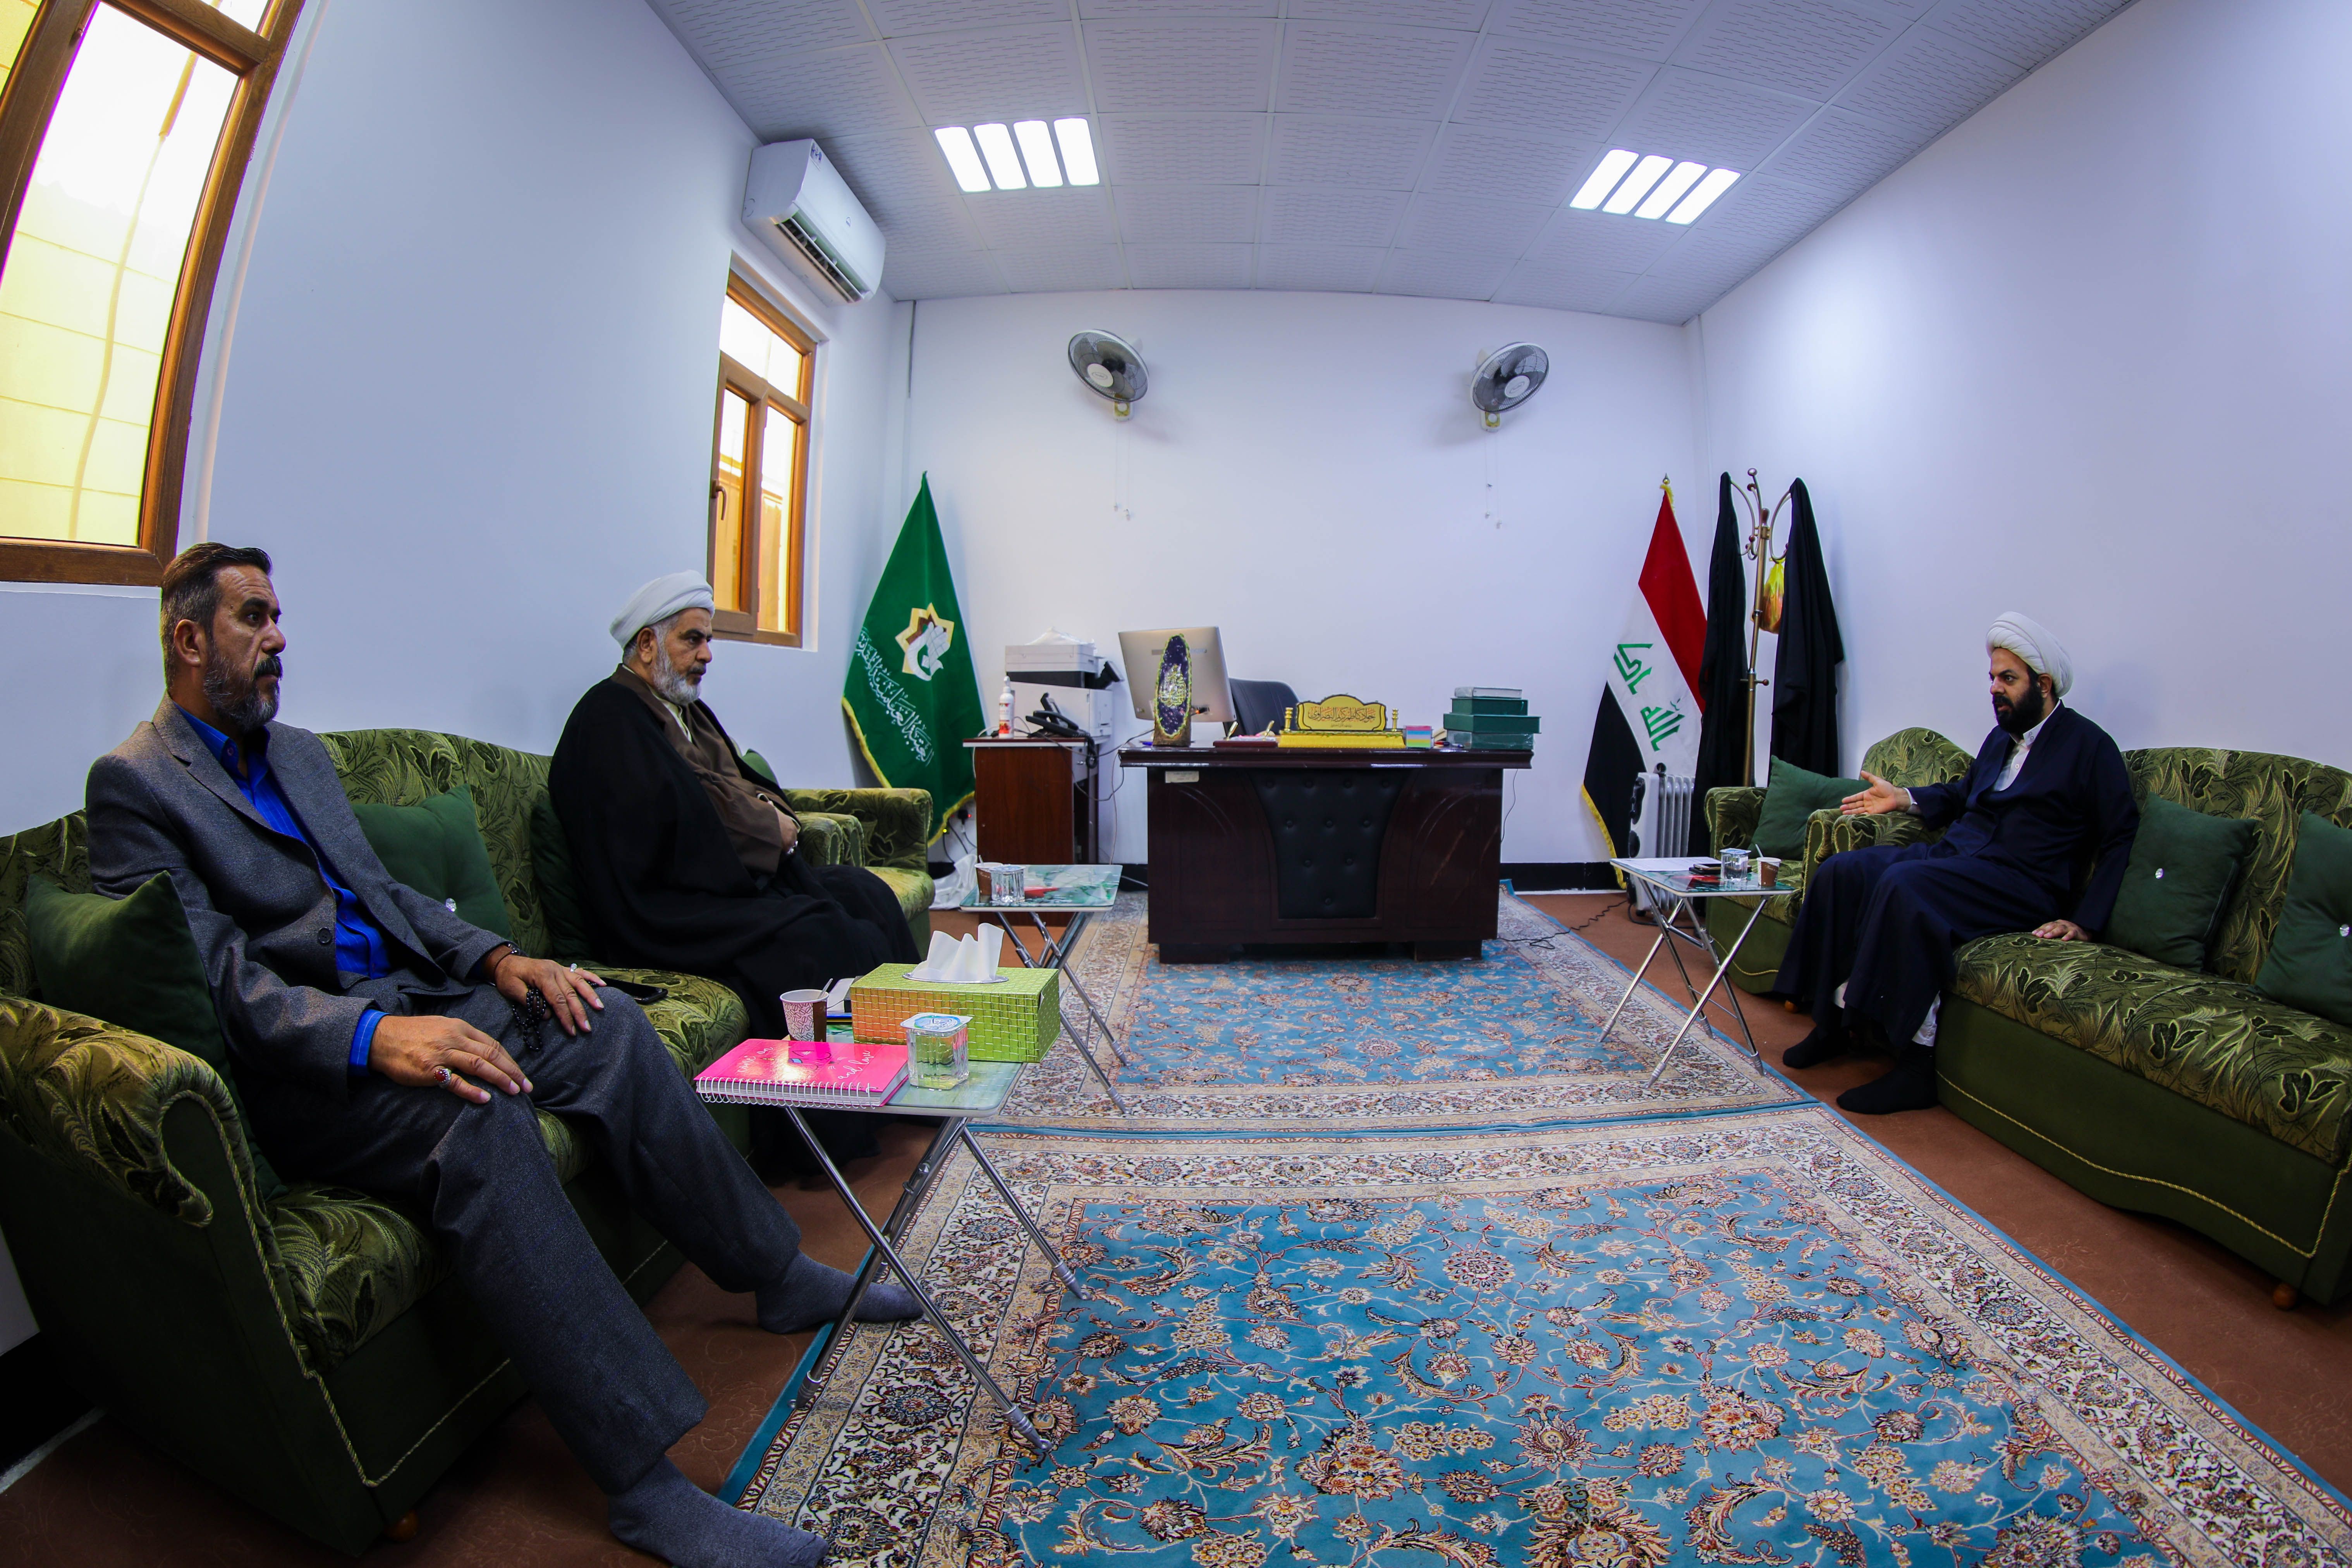 جامعة المصطفى العالمية - ممثلية العراق تزور معهد القرآن الكريم لفتح أبواب التعاون بين الطرفين